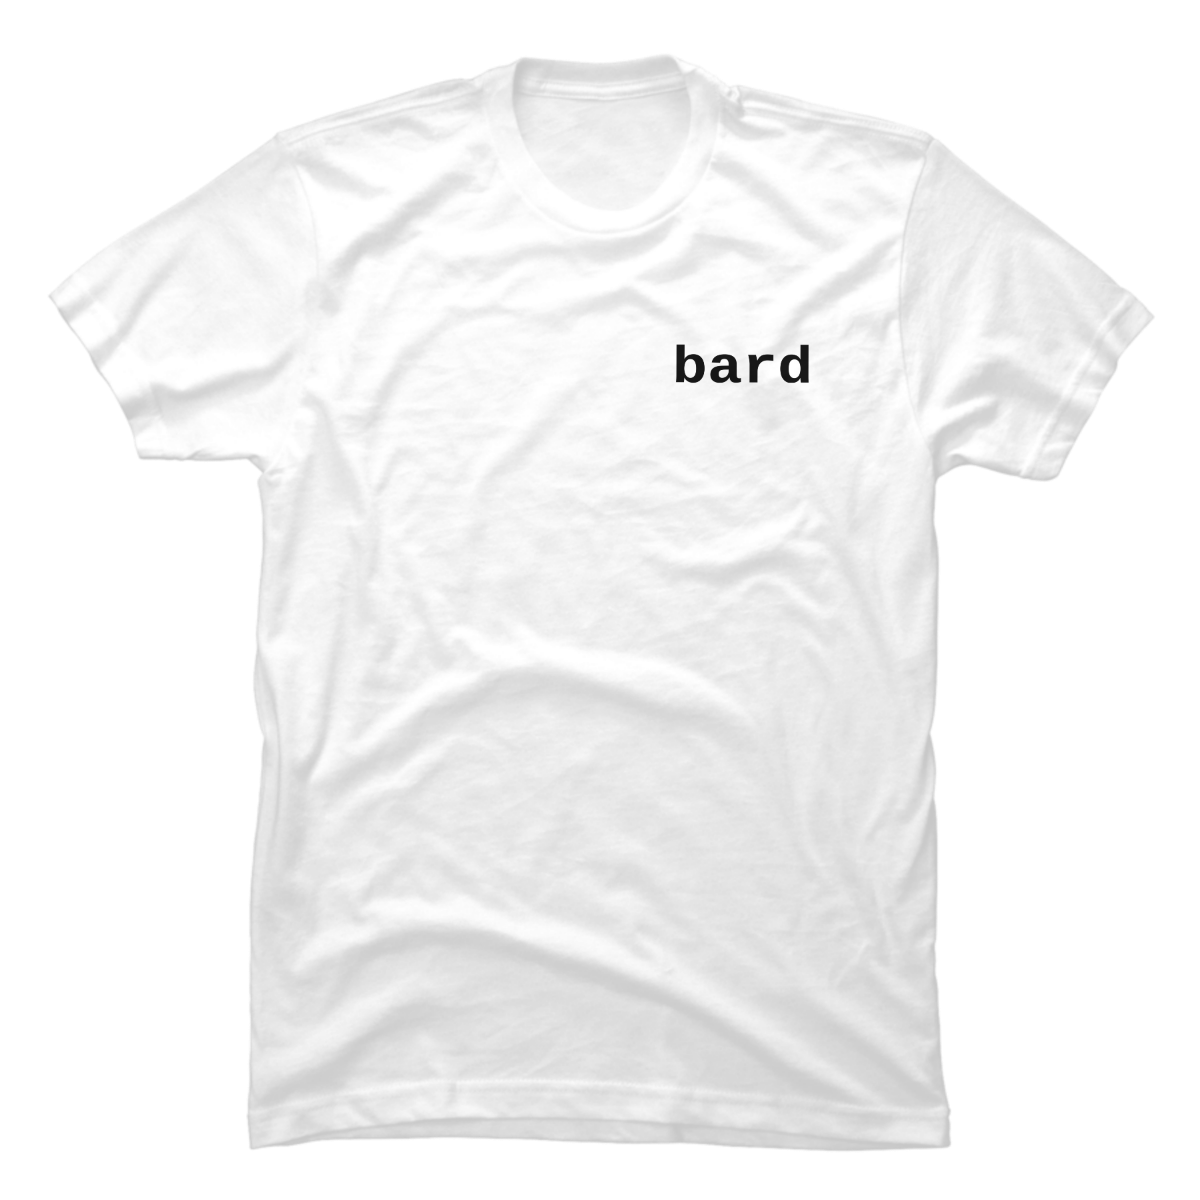 bard t shirt